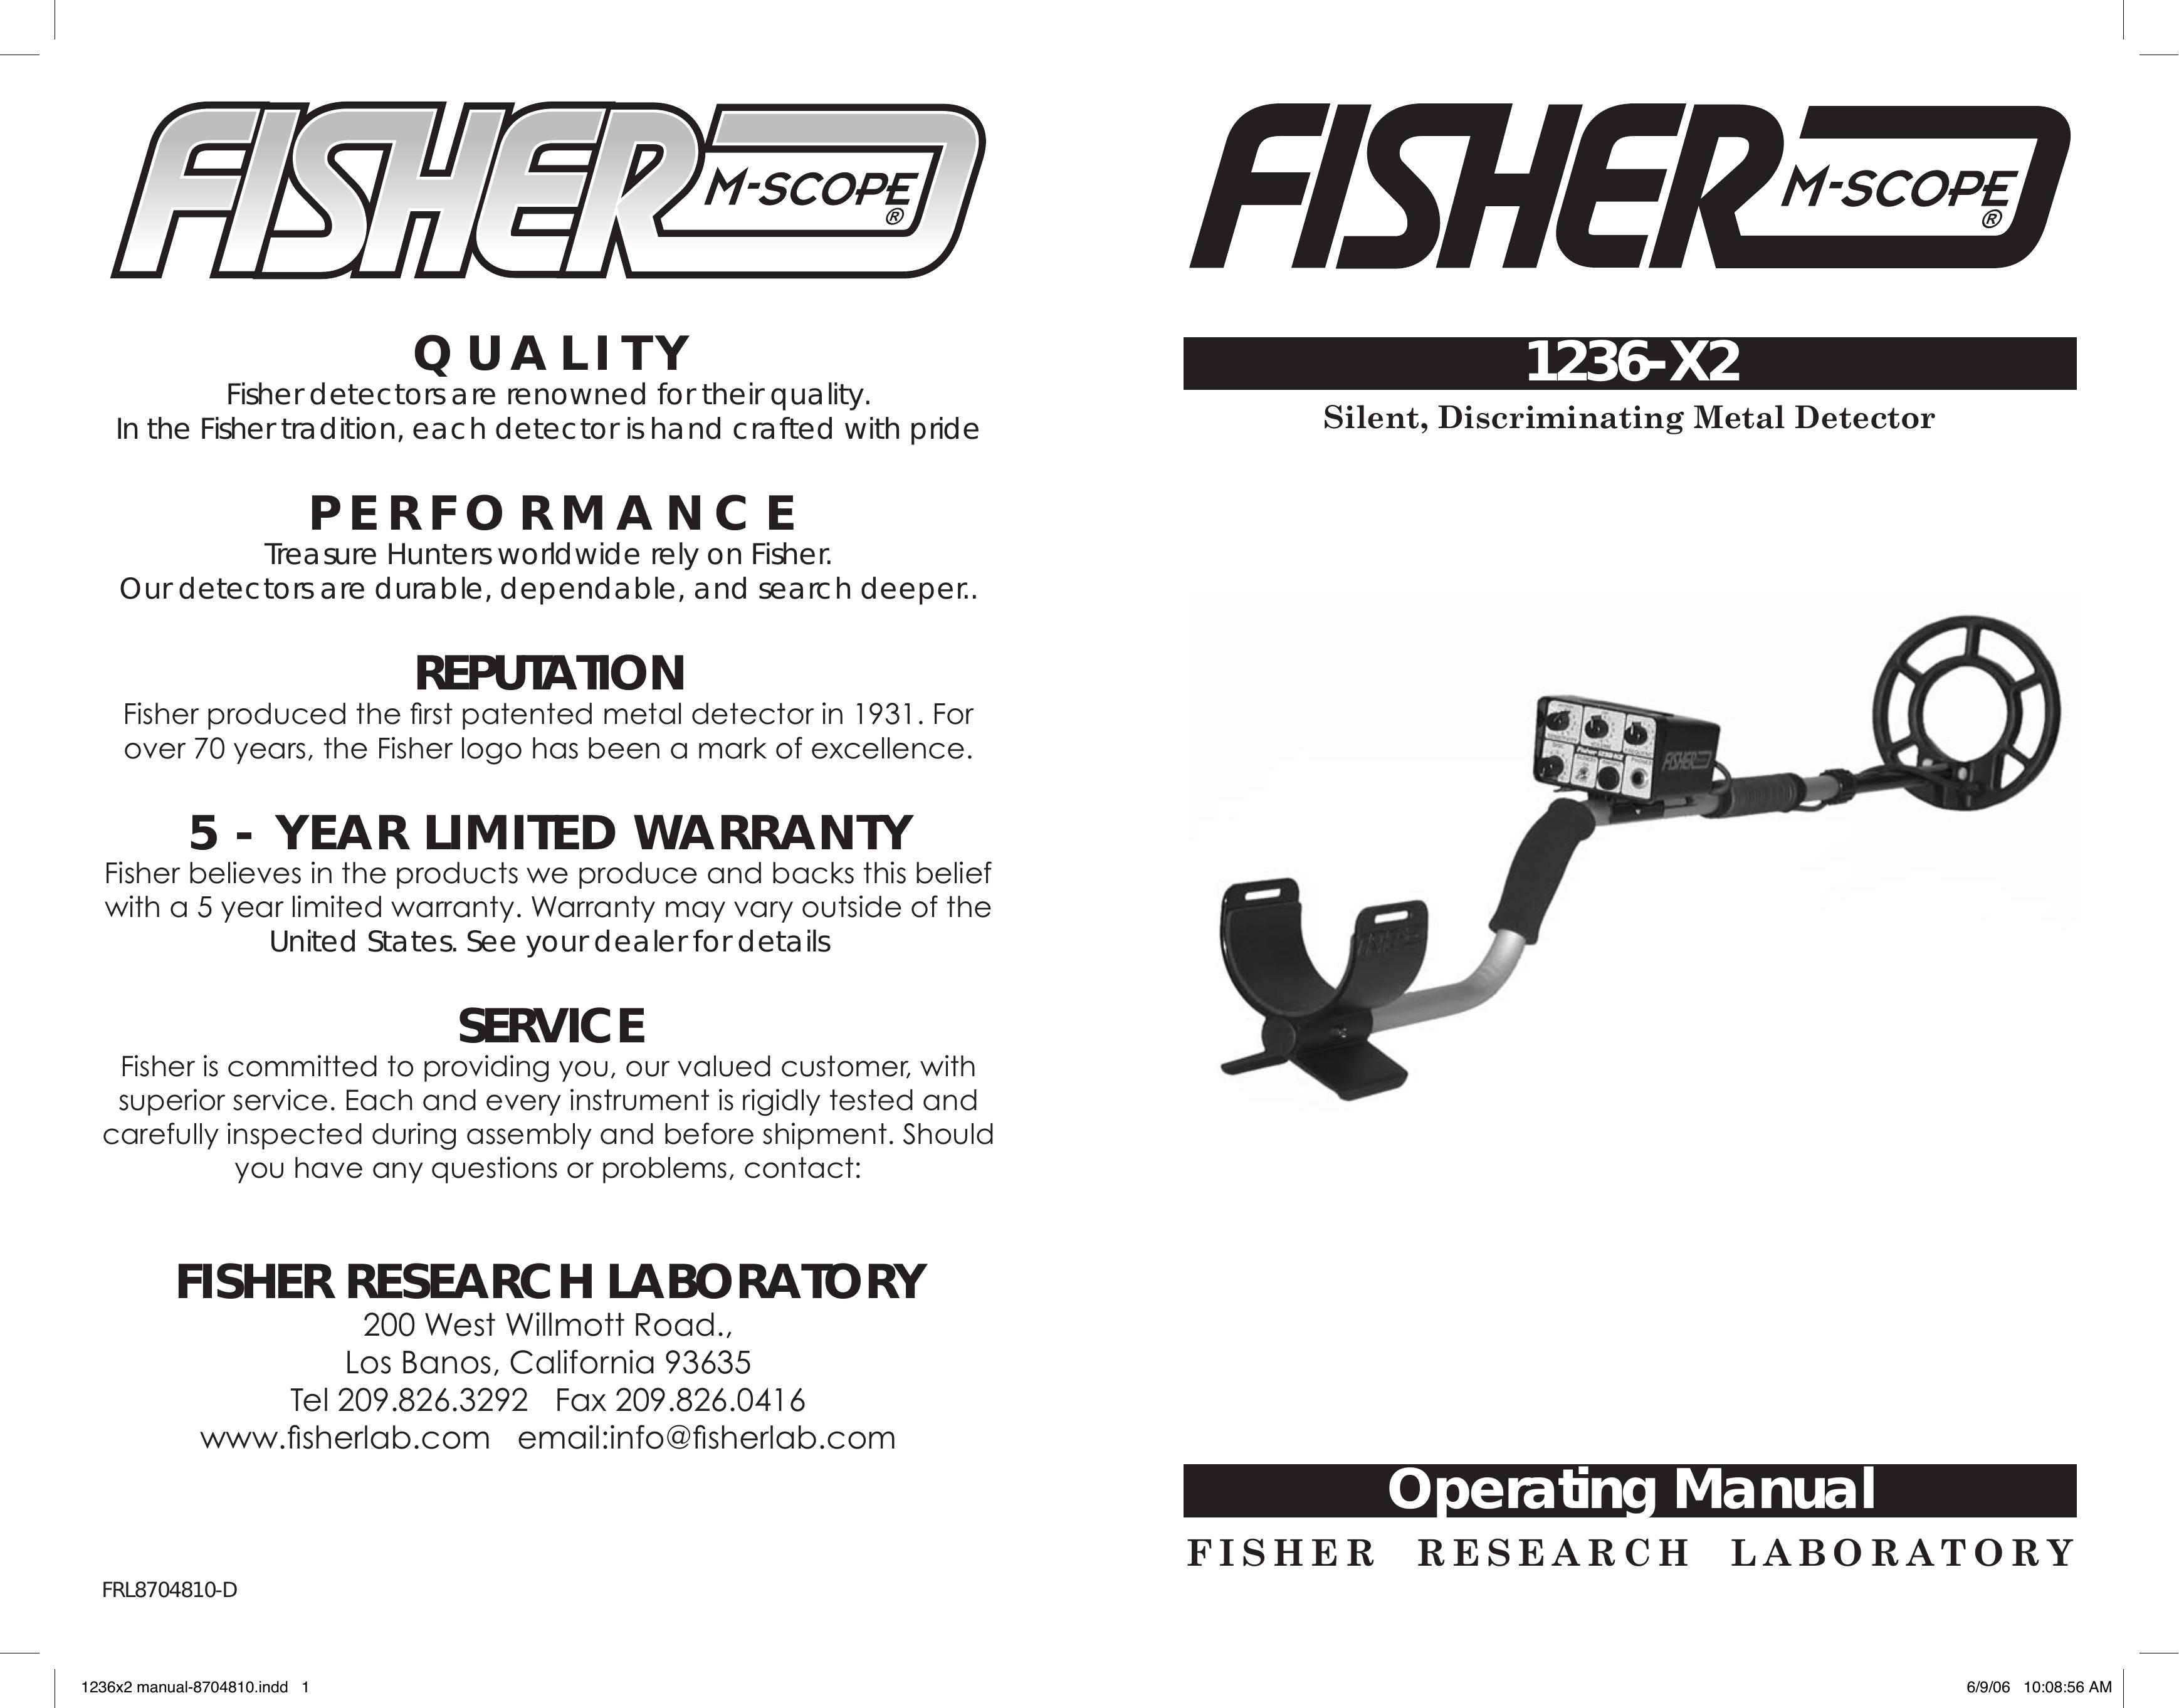 Fisher 1236-X2 Metal Detector User Manual